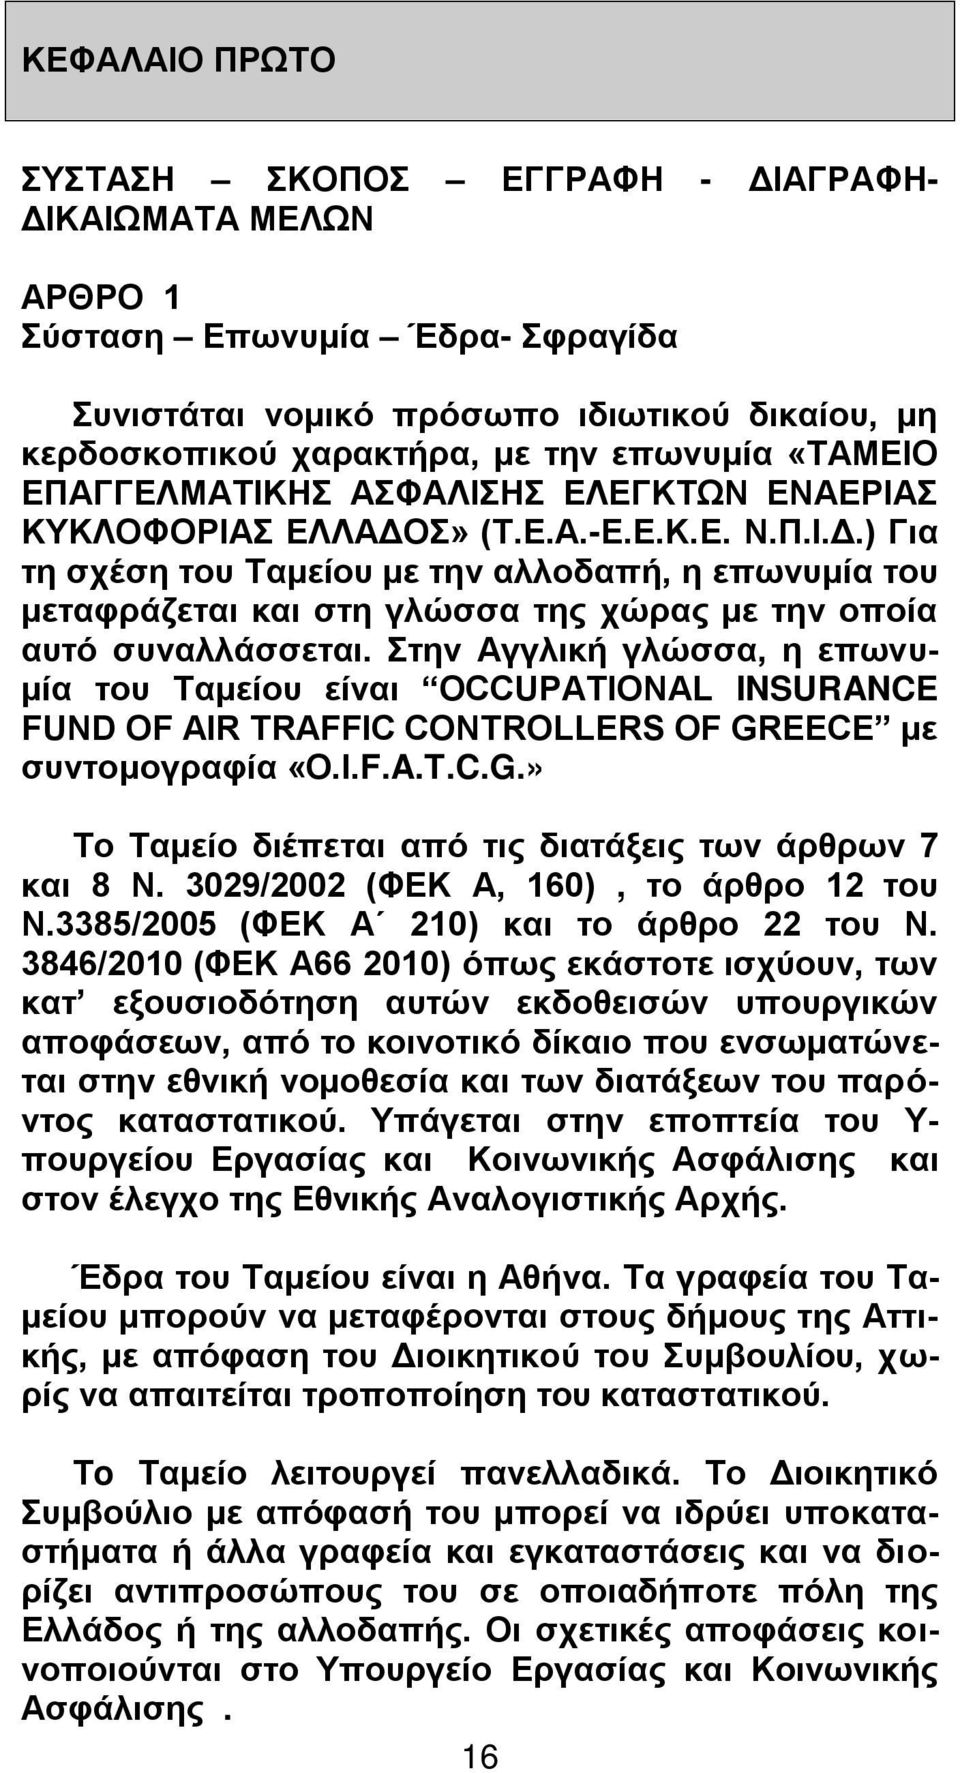 Στην Αγγλική γλώσσα, η επωνυμία του Ταμείου είναι OCCUPATIONAL INSURANCE FUND OF AIR TRAFFIC CONTROLLERS OF GREECE με συντομογραφία «O.Ι.F.A.T.C.G.» Το Ταμείο διέπεται από τις διατάξεις των άρθρων 7 και 8 Ν.